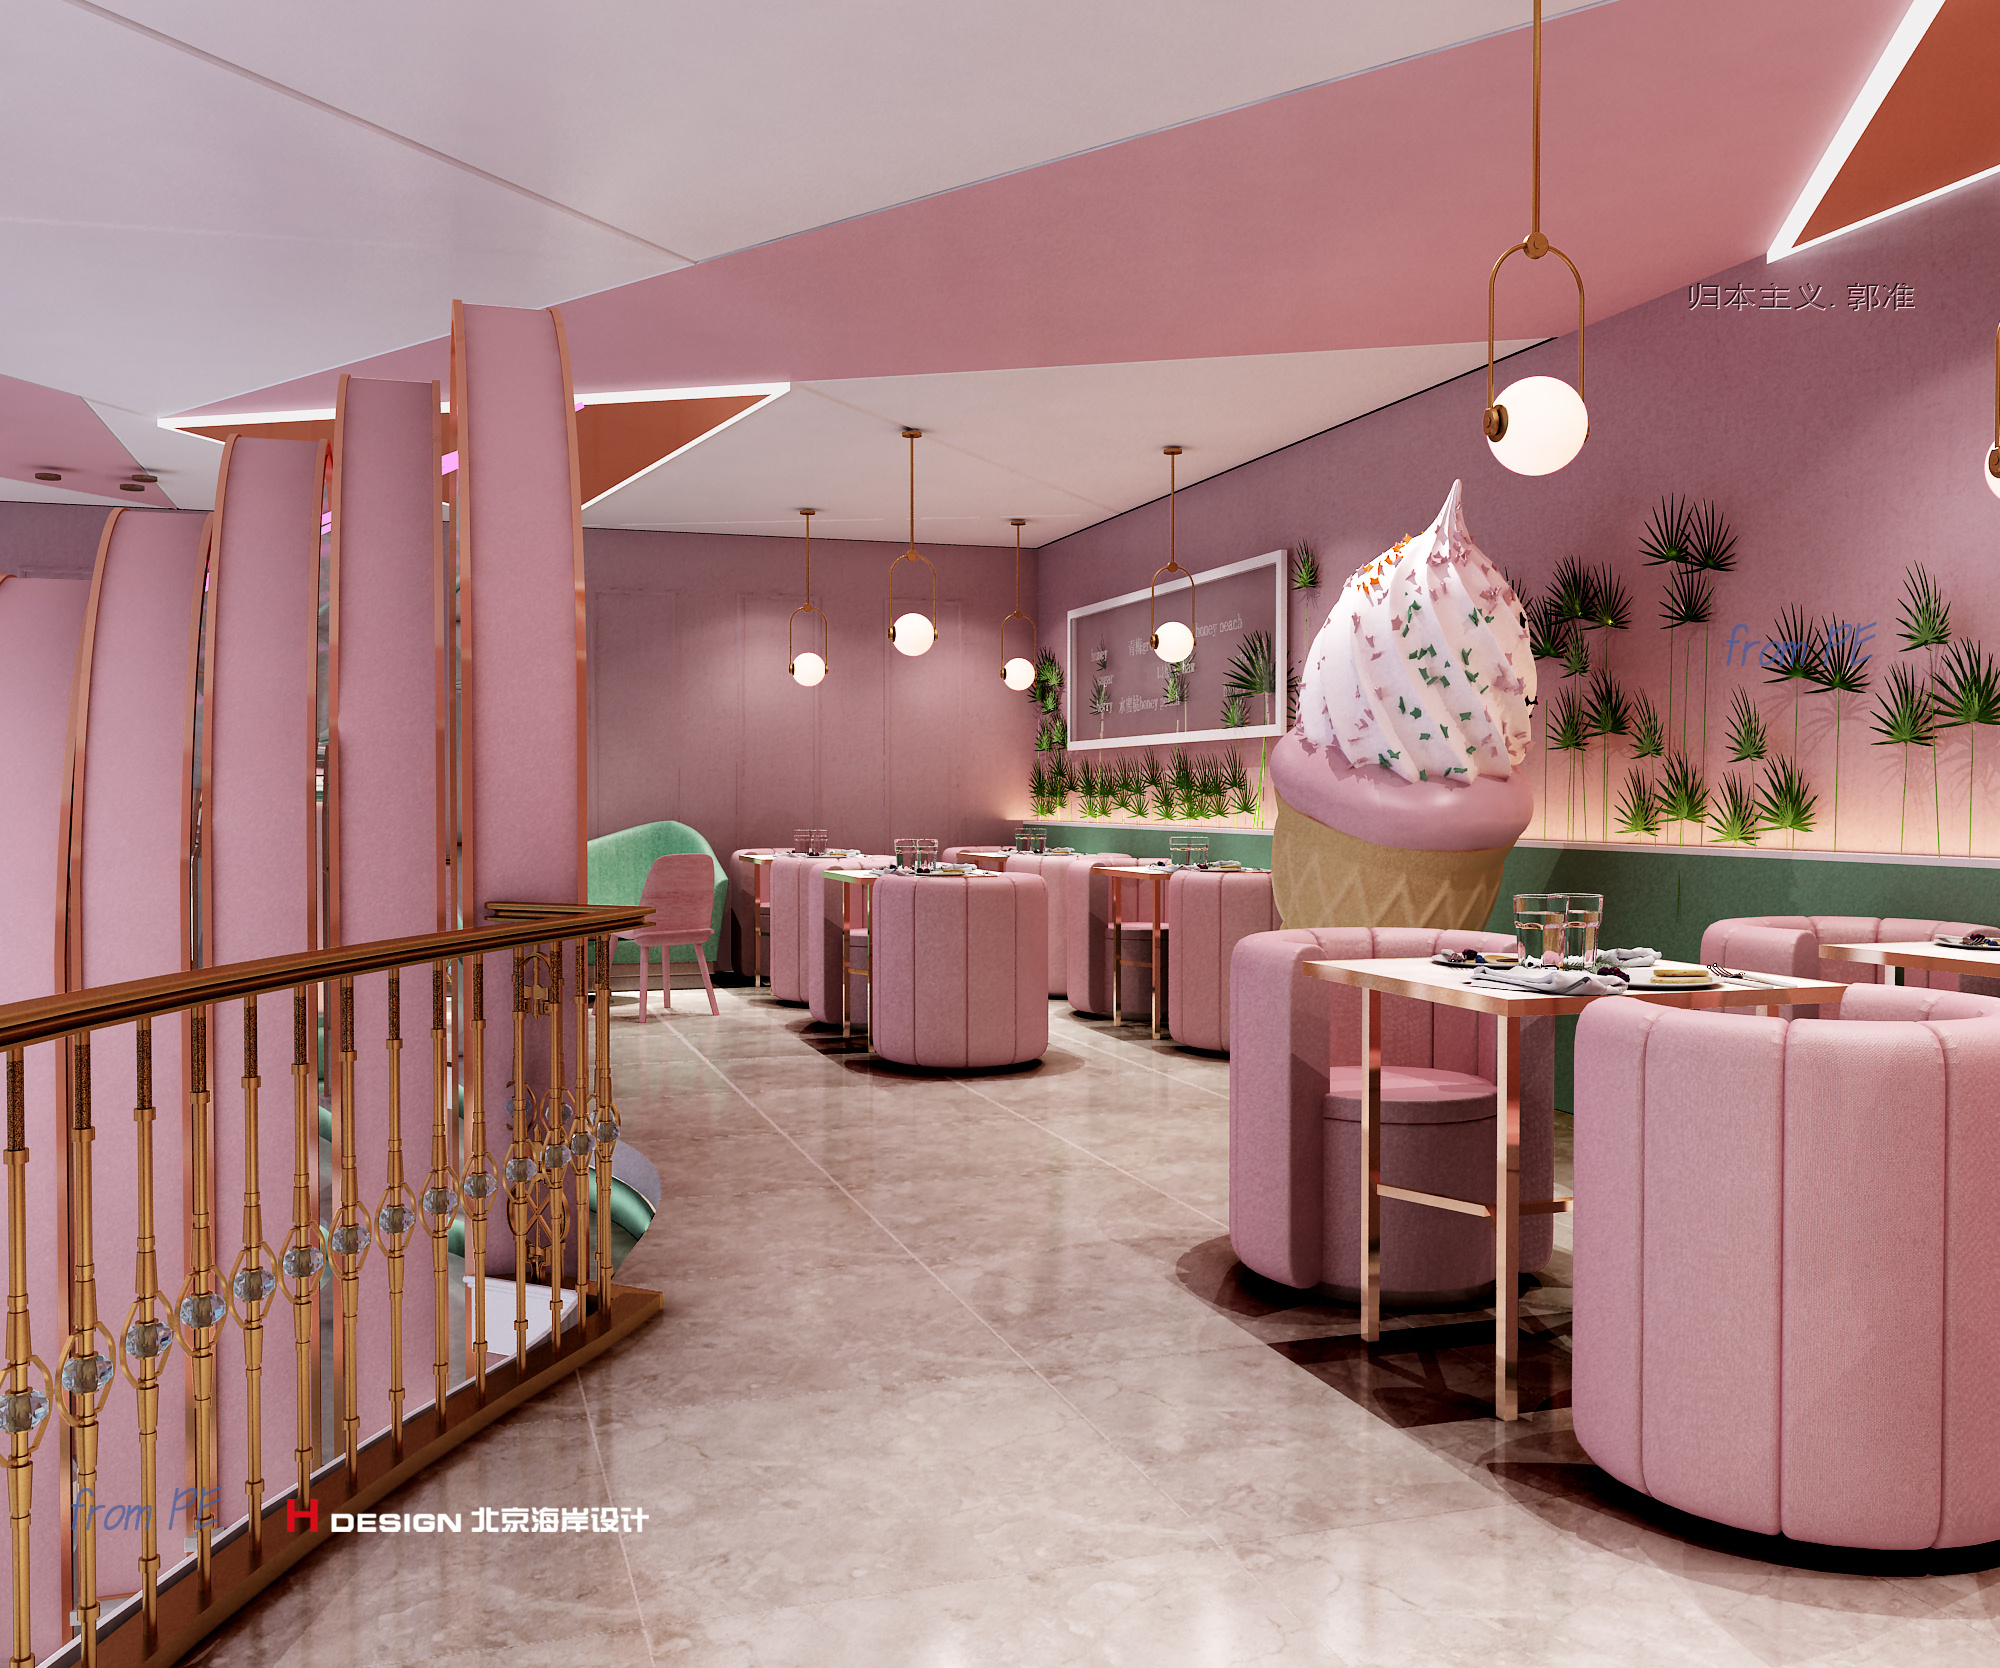 又是粉嫩嫩的一家店#甜品#冰淇淋店|空间|室内设计|pe